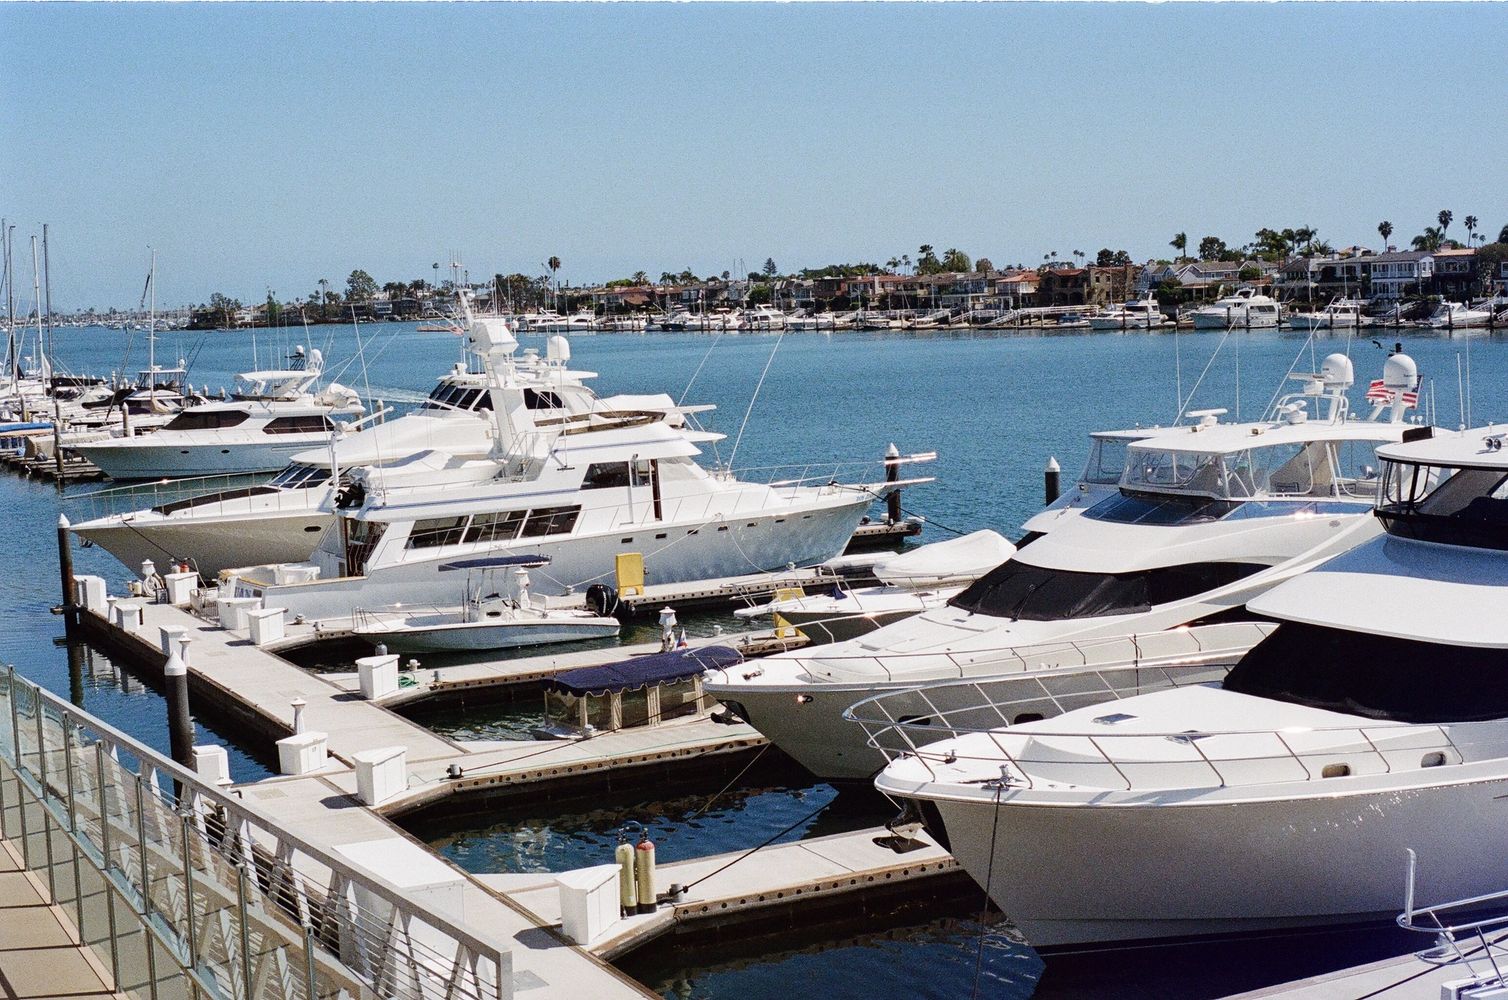 Boats in a marina 